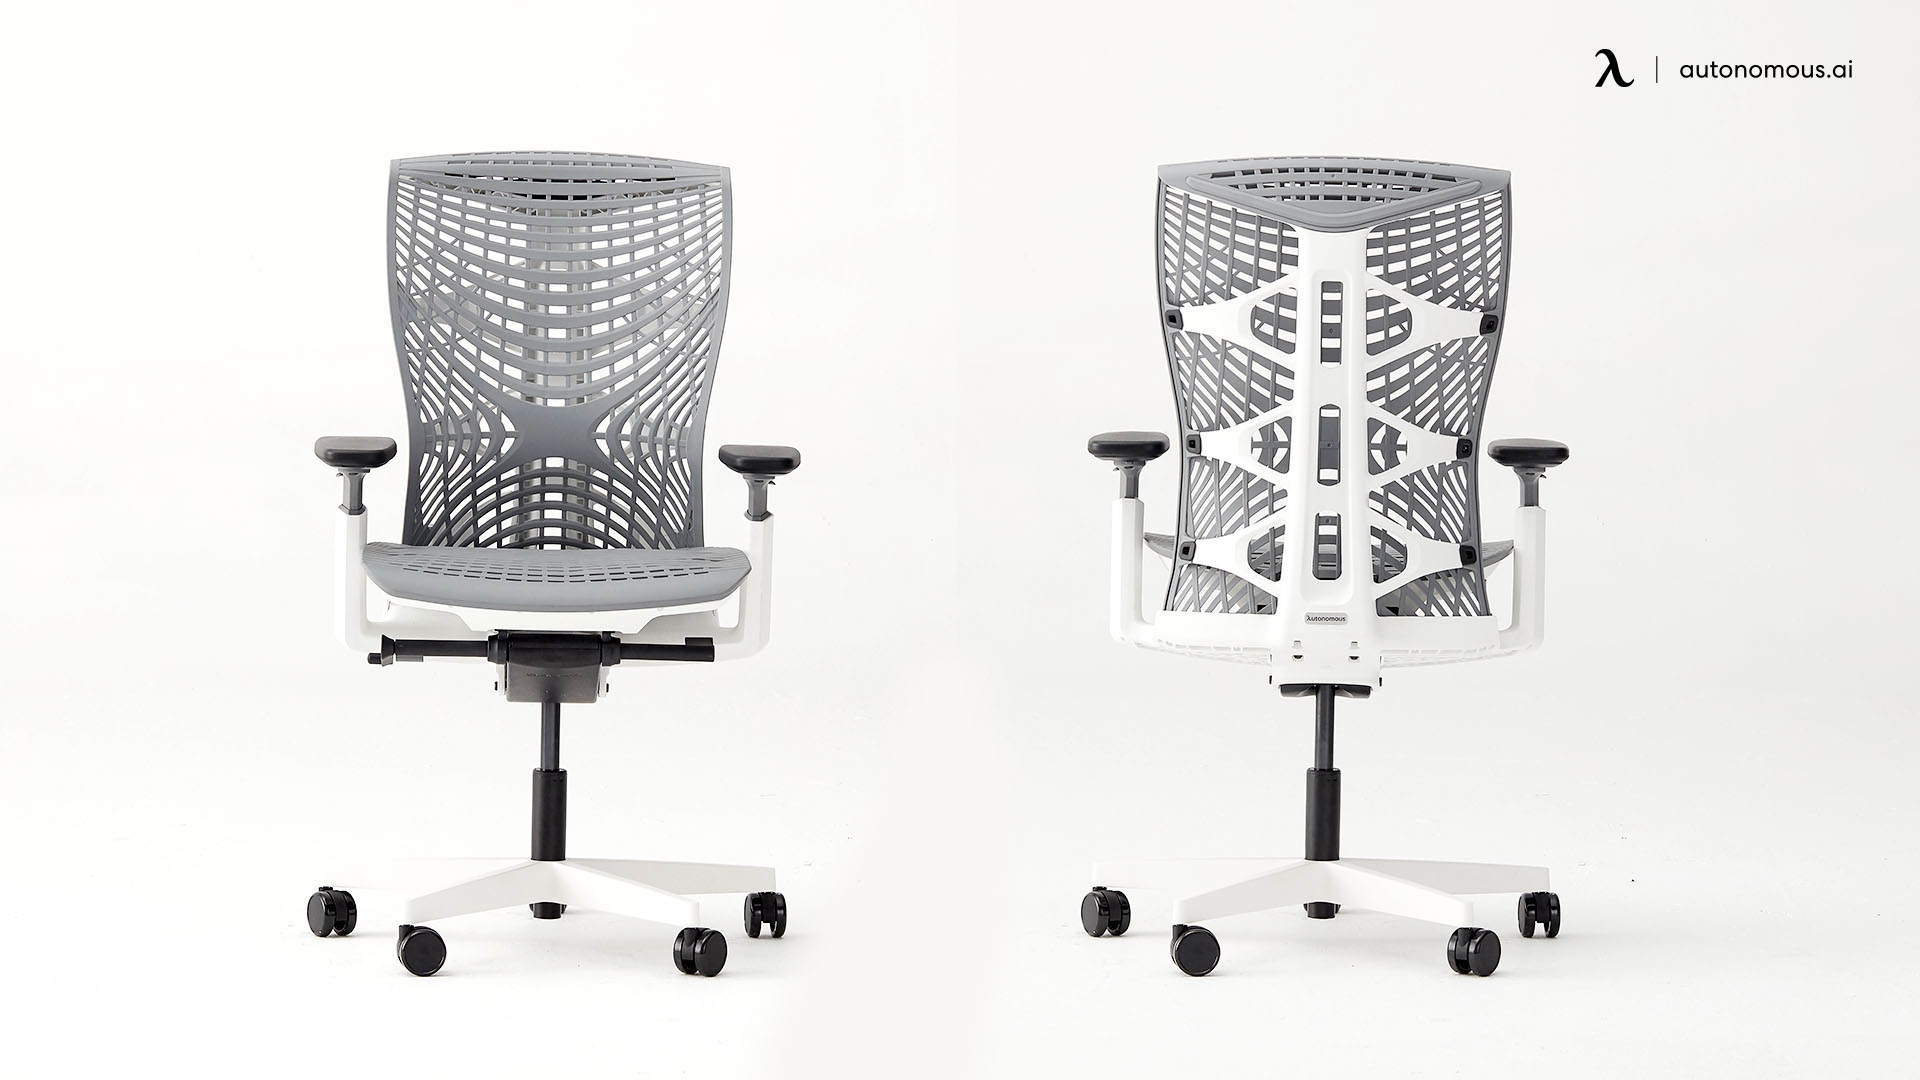 ErgoChair Pro+ mesh office chair